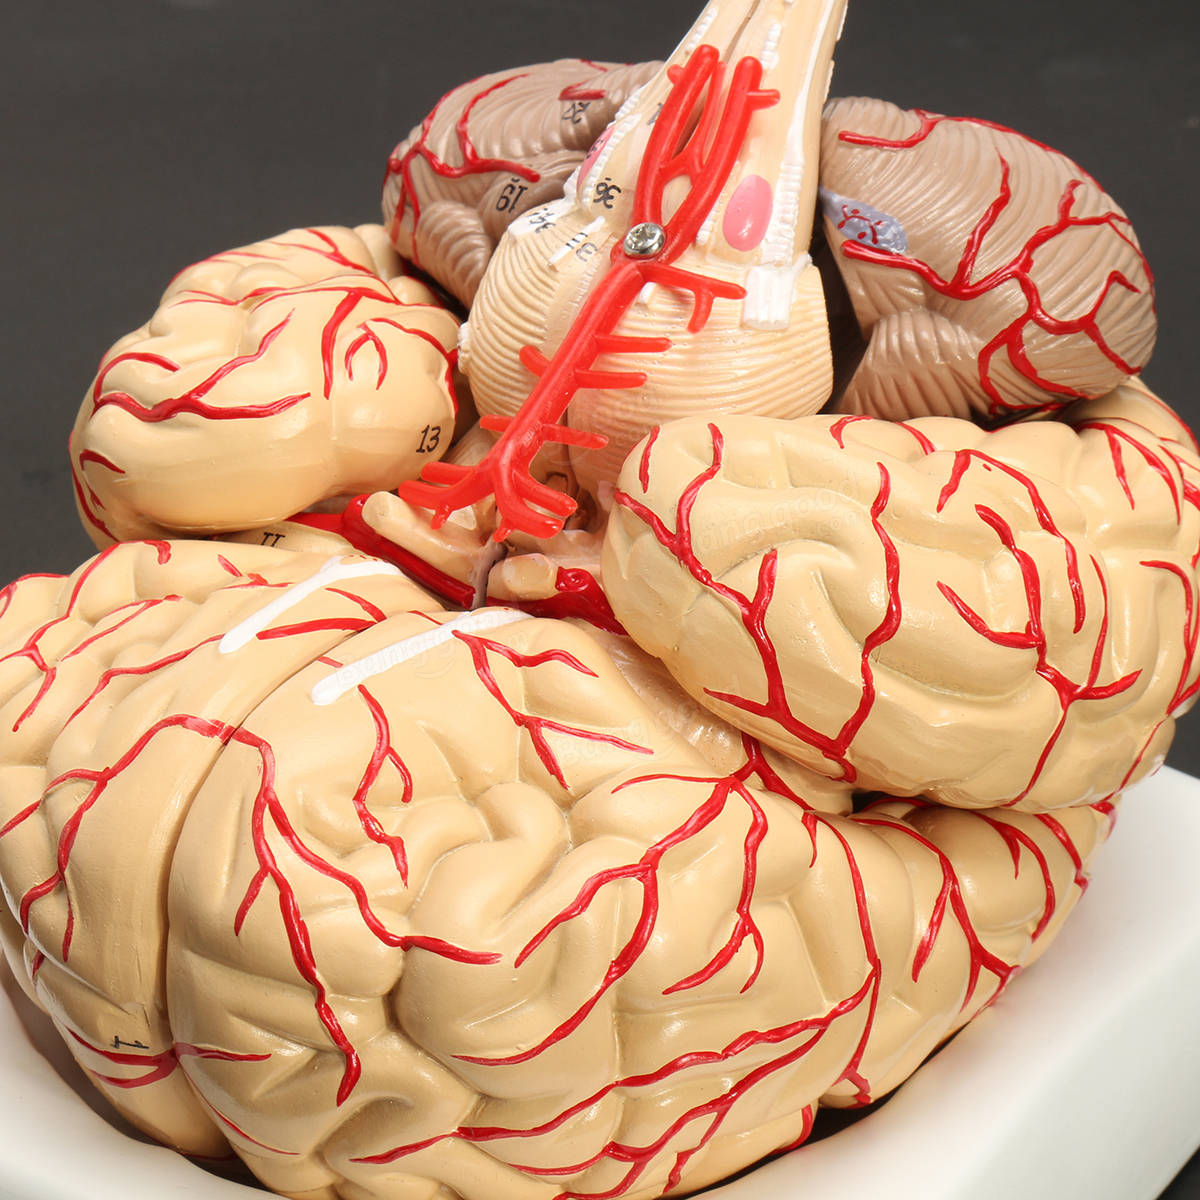 Мозг купить спб. Анатомическая модель головного мозга. Анатомическая модель мозга человека в натуральную величину.